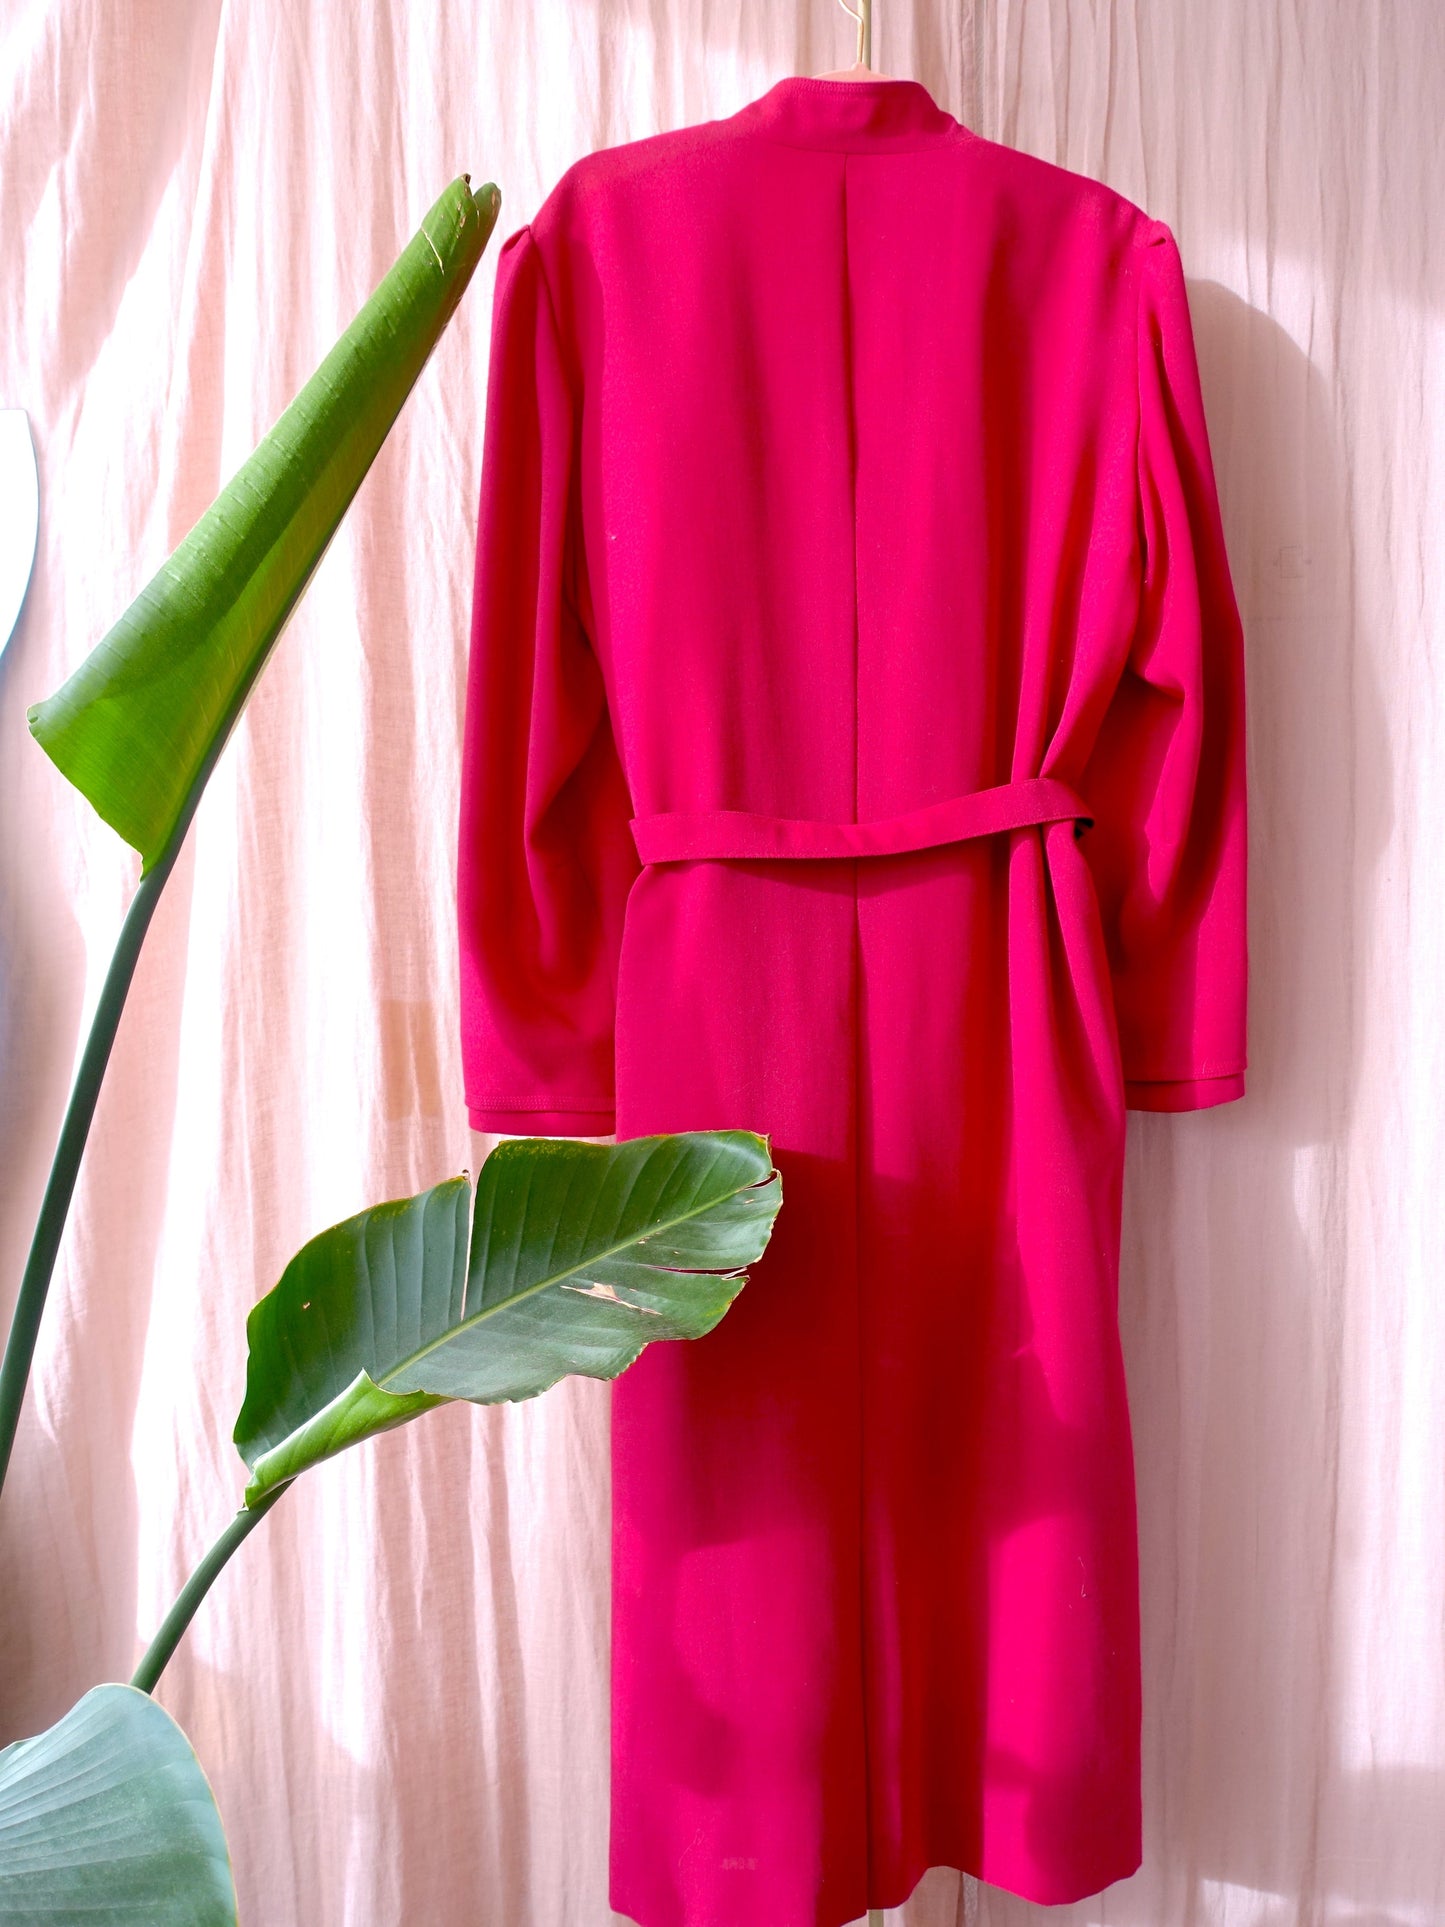 Vintage Parisienne paradise jurk pink